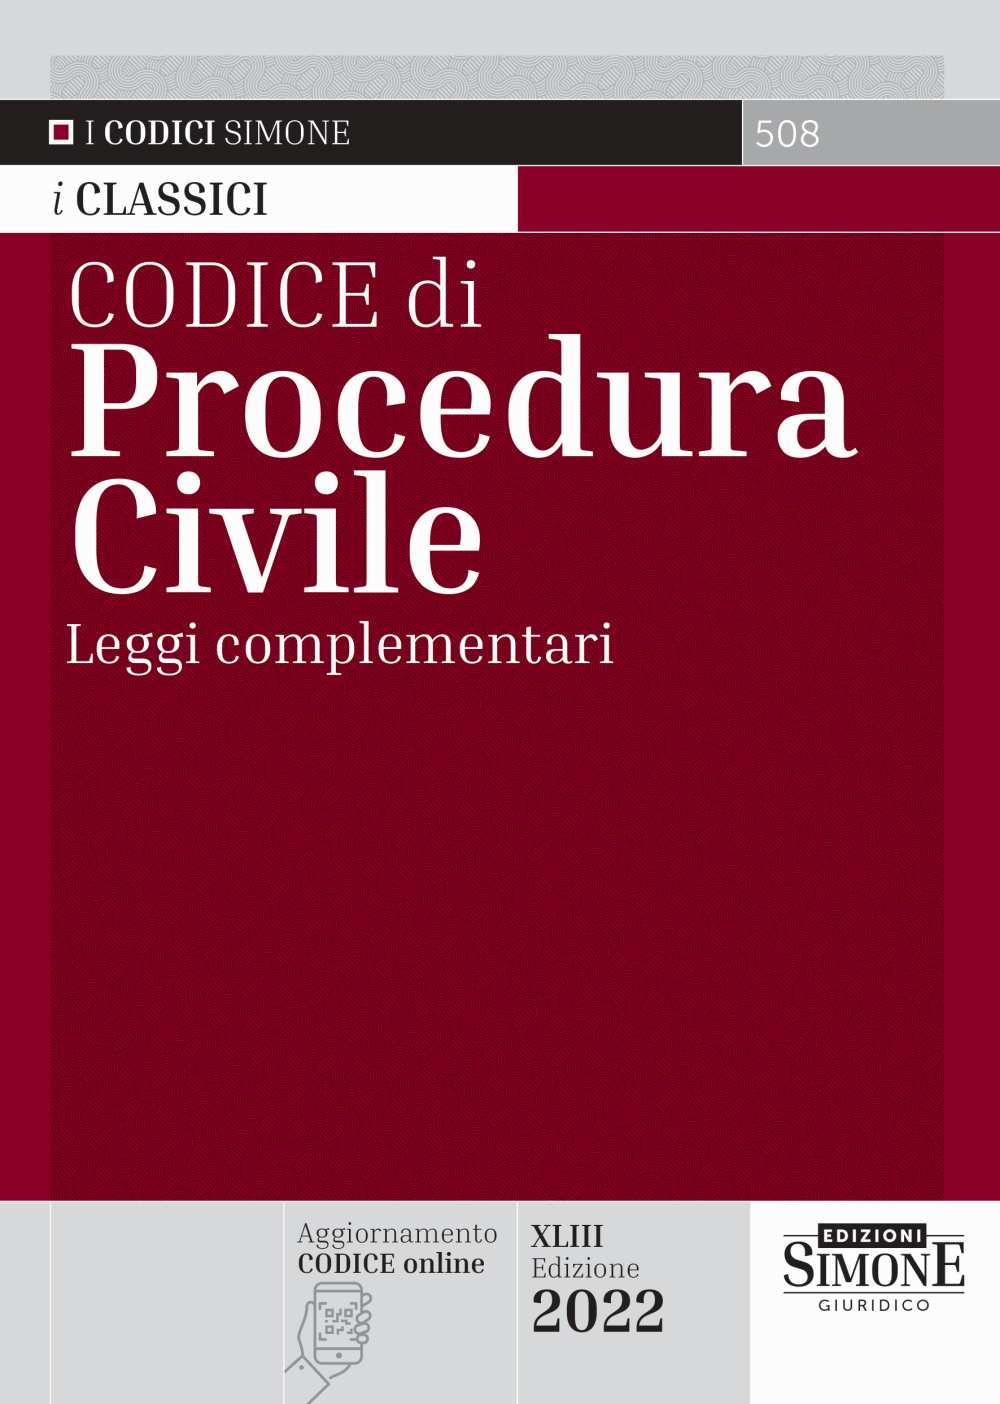 Codice di Procedura Civile 2022